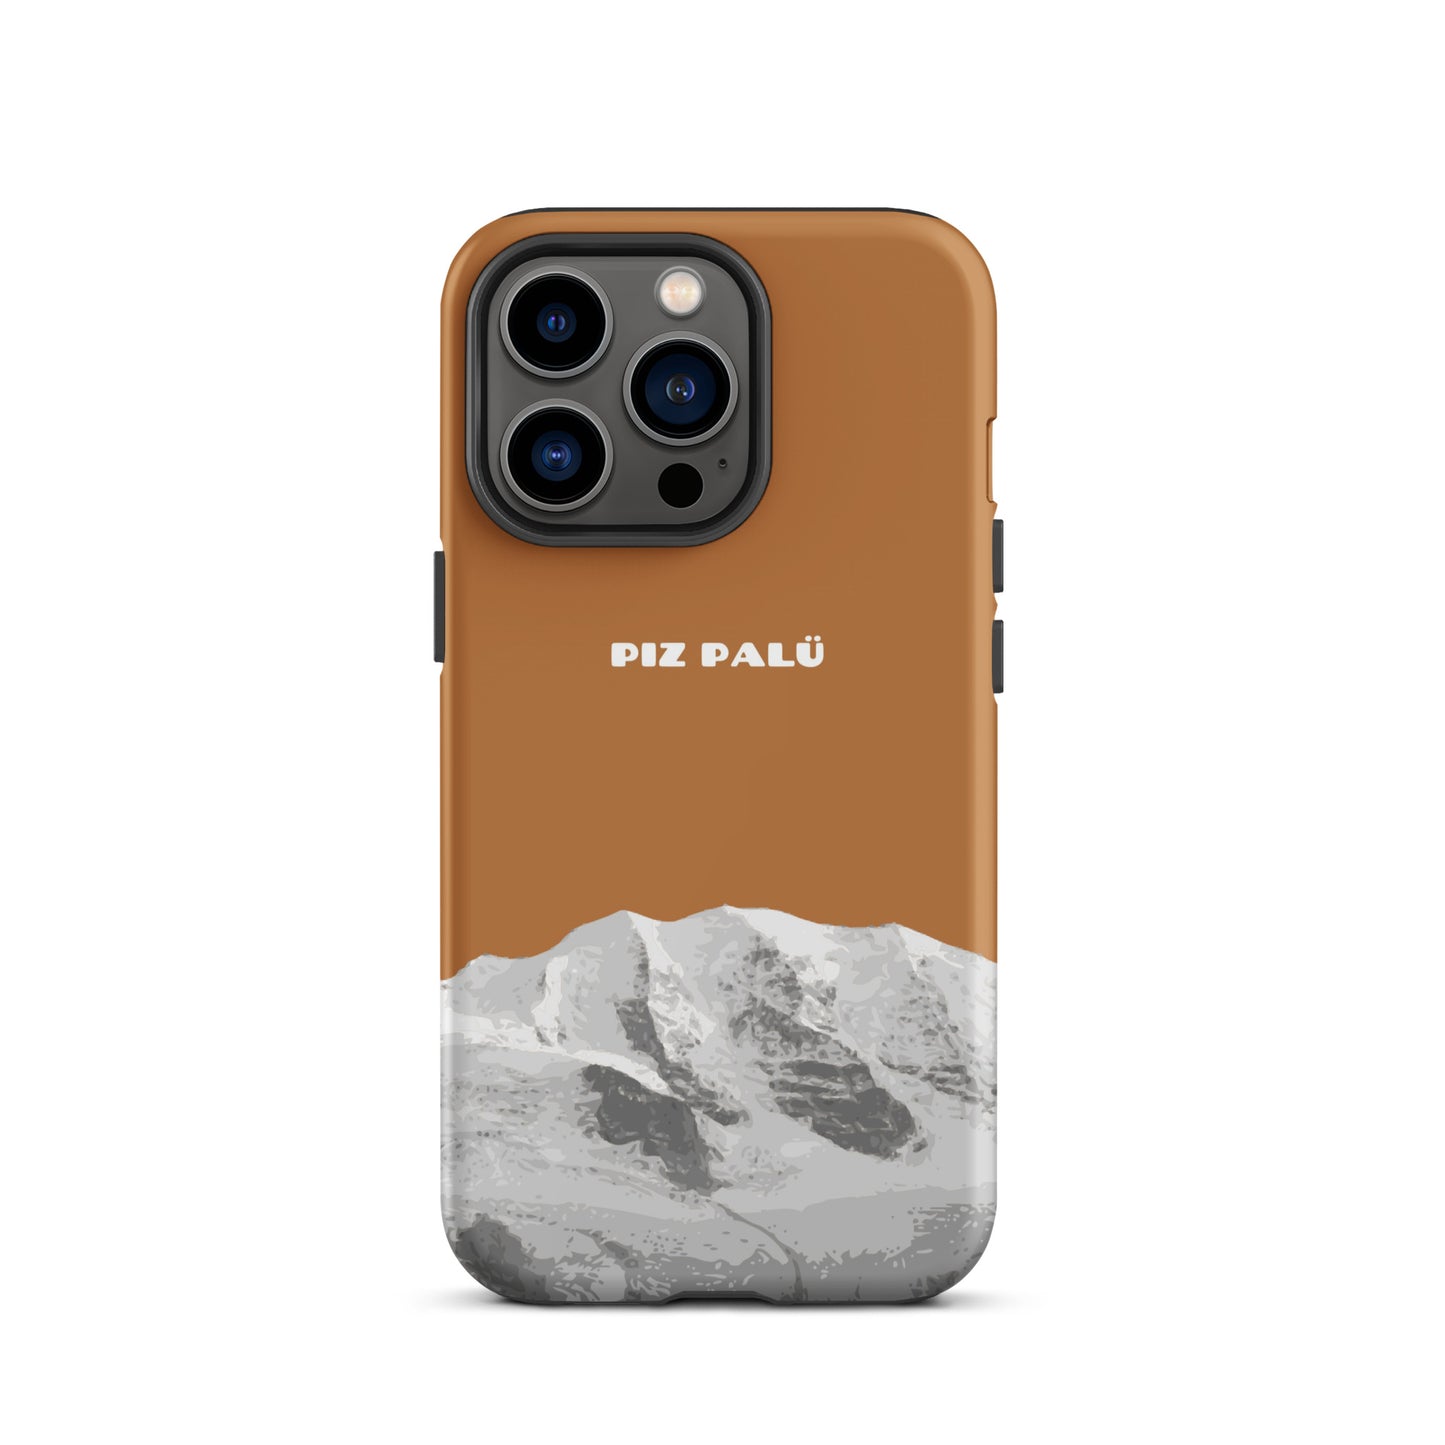 Hülle für das iPhone 13 Pro von Apple in der Farbe Kupfer, dass den Piz Palü in Graubünden zeigt.